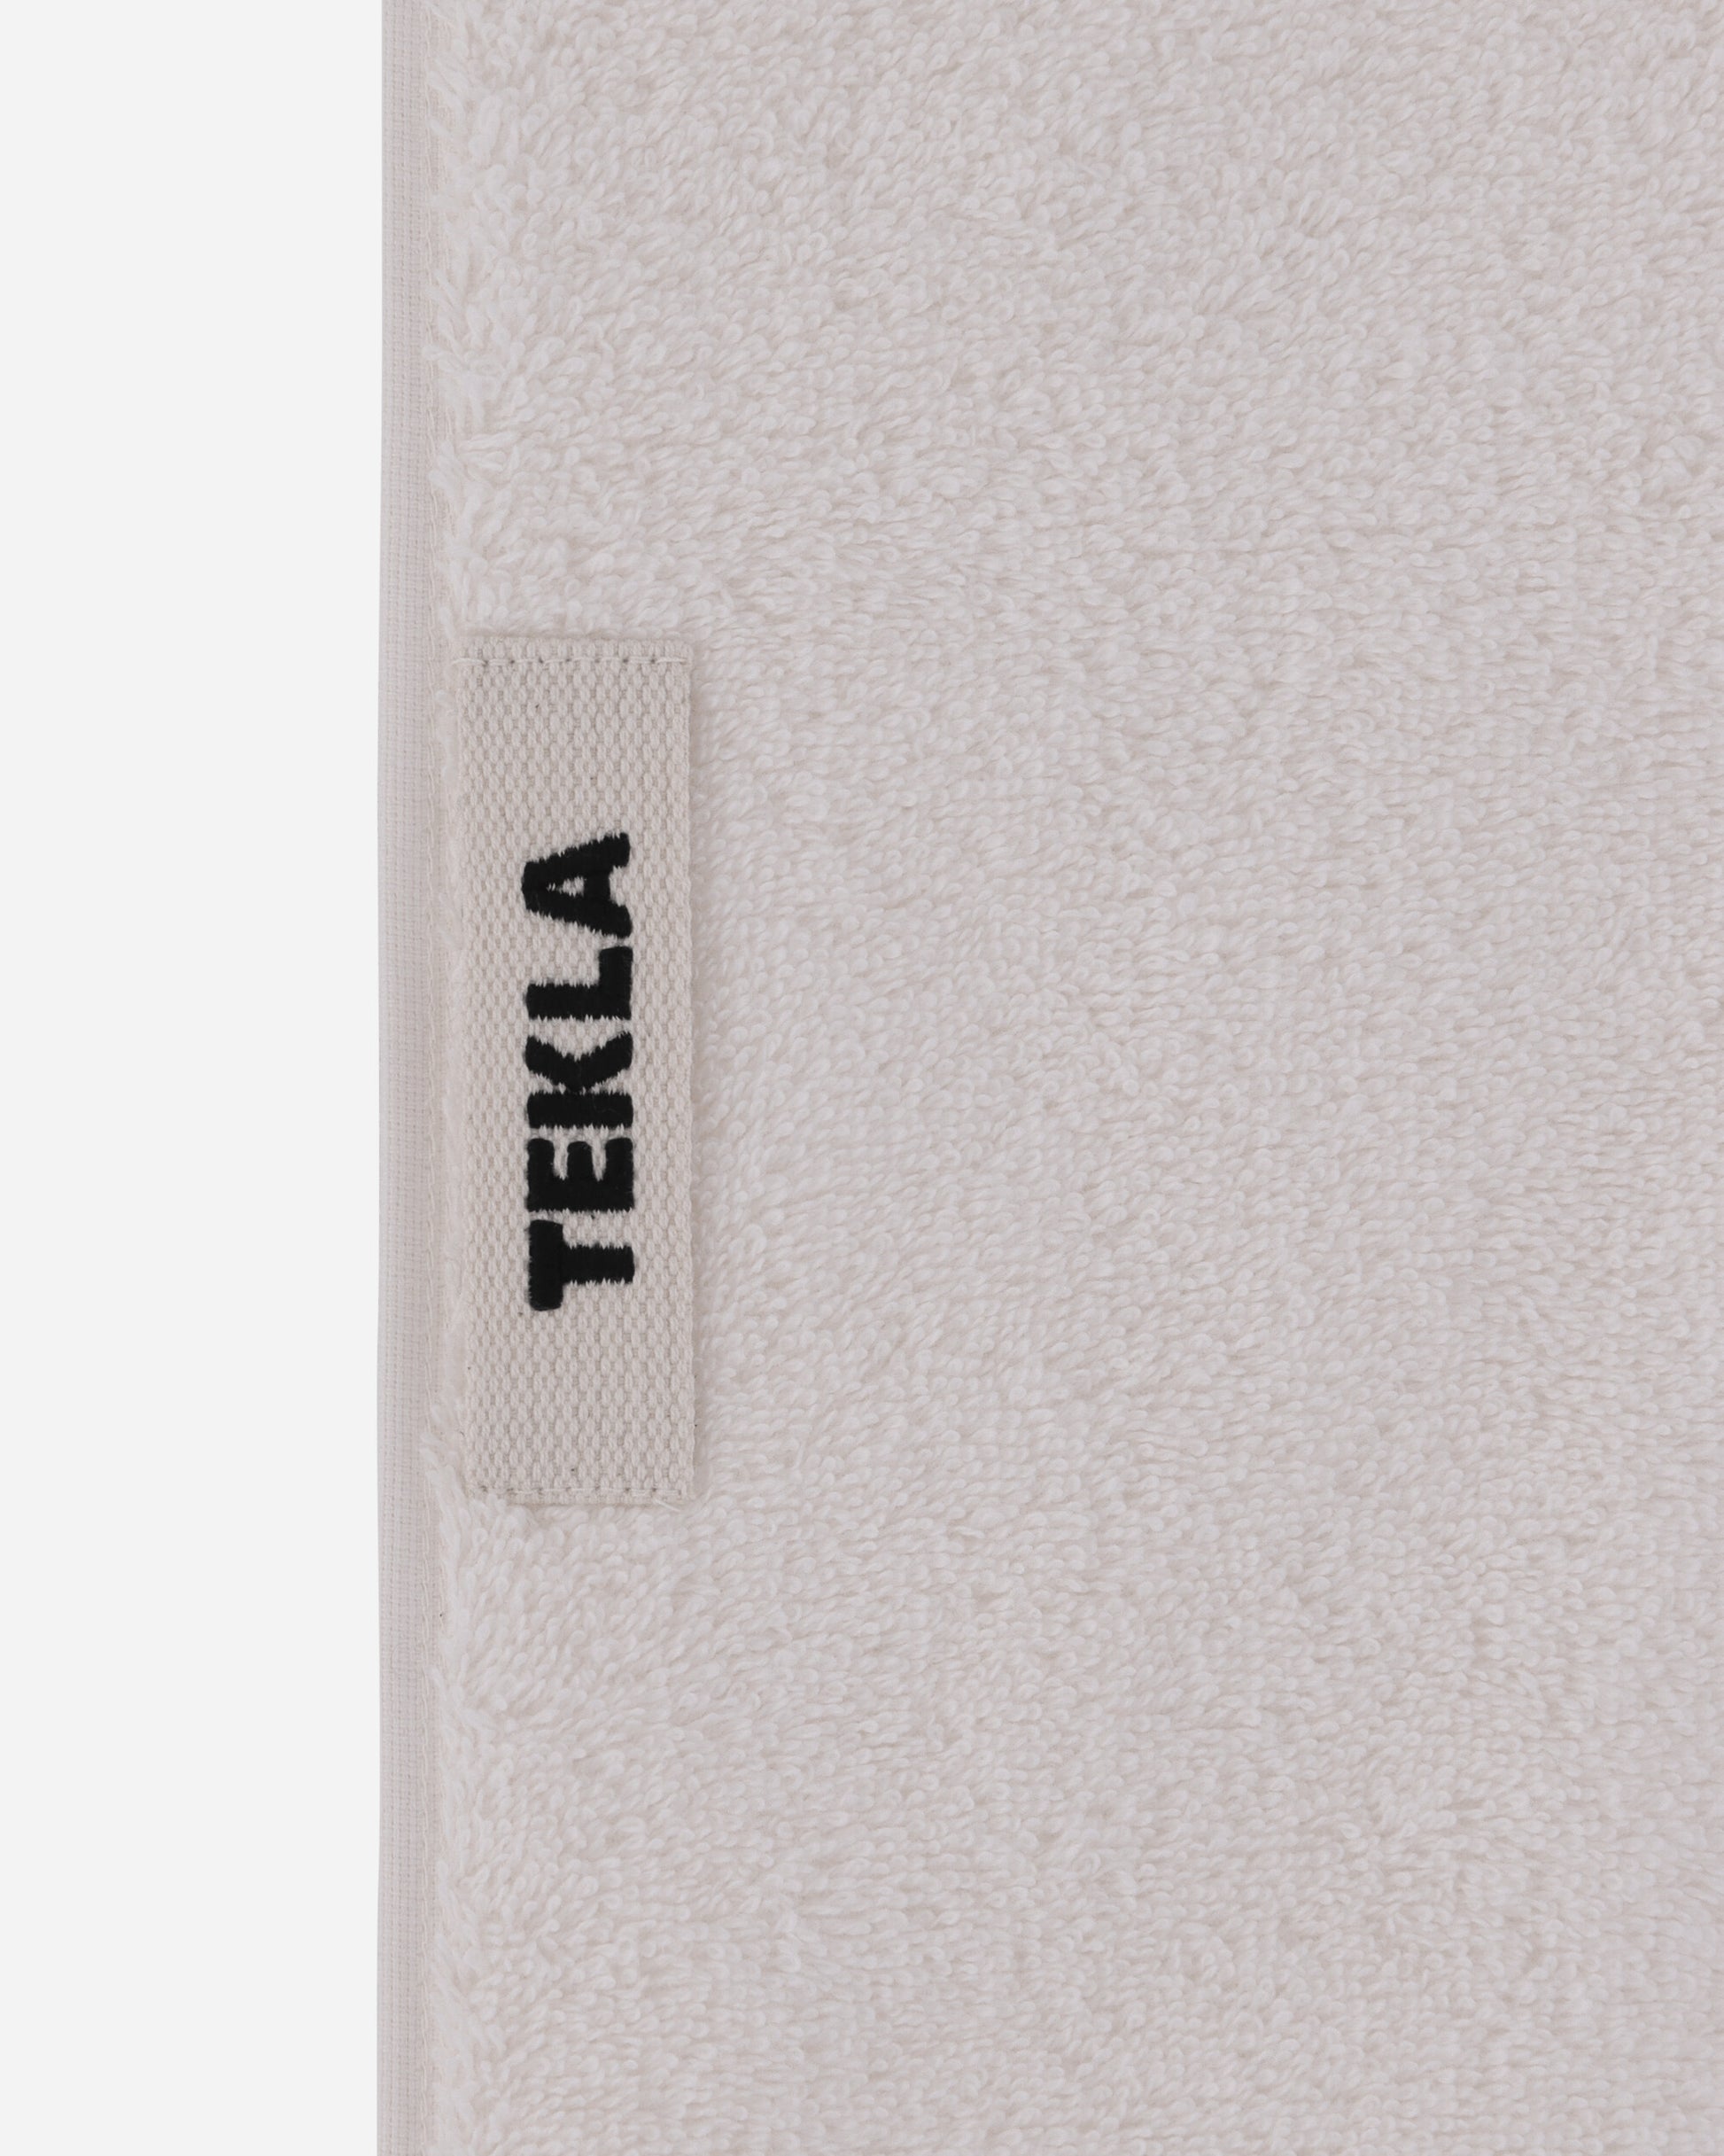 Tekla Terry Towel 30X30 Ivory Textile Bath Towels TT-30x30 IV